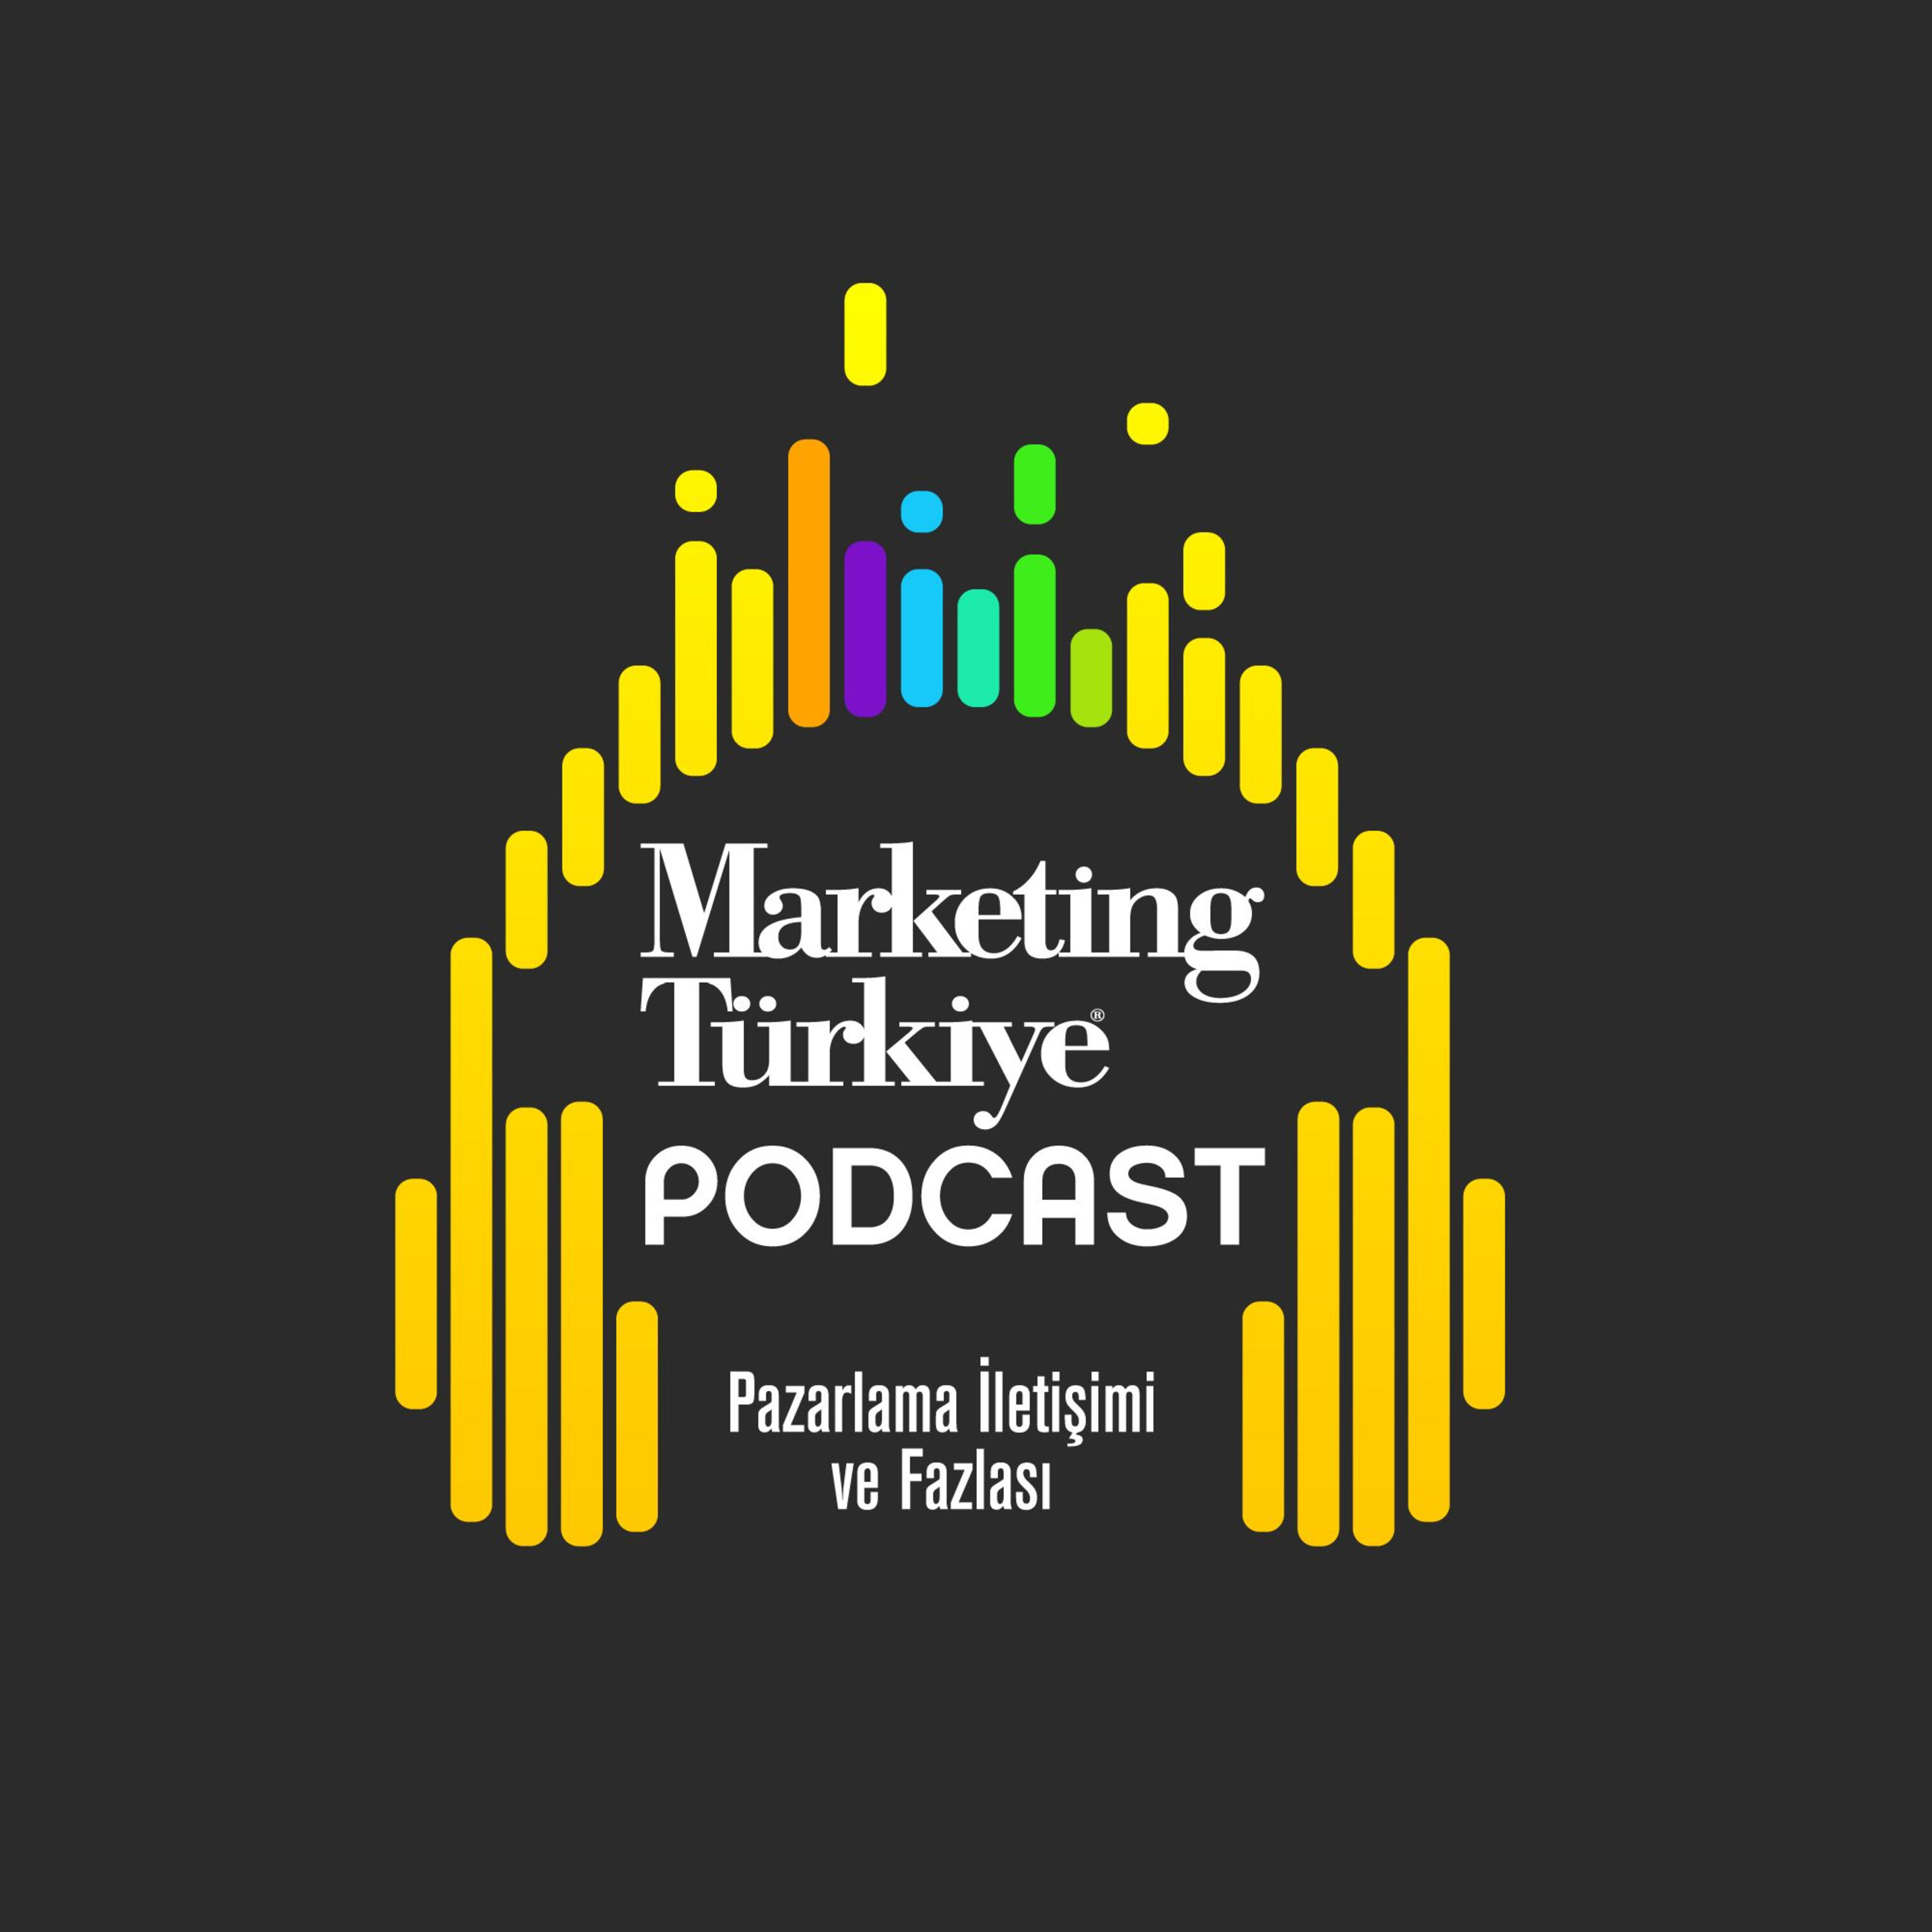 Podcast Marketing Türkiye